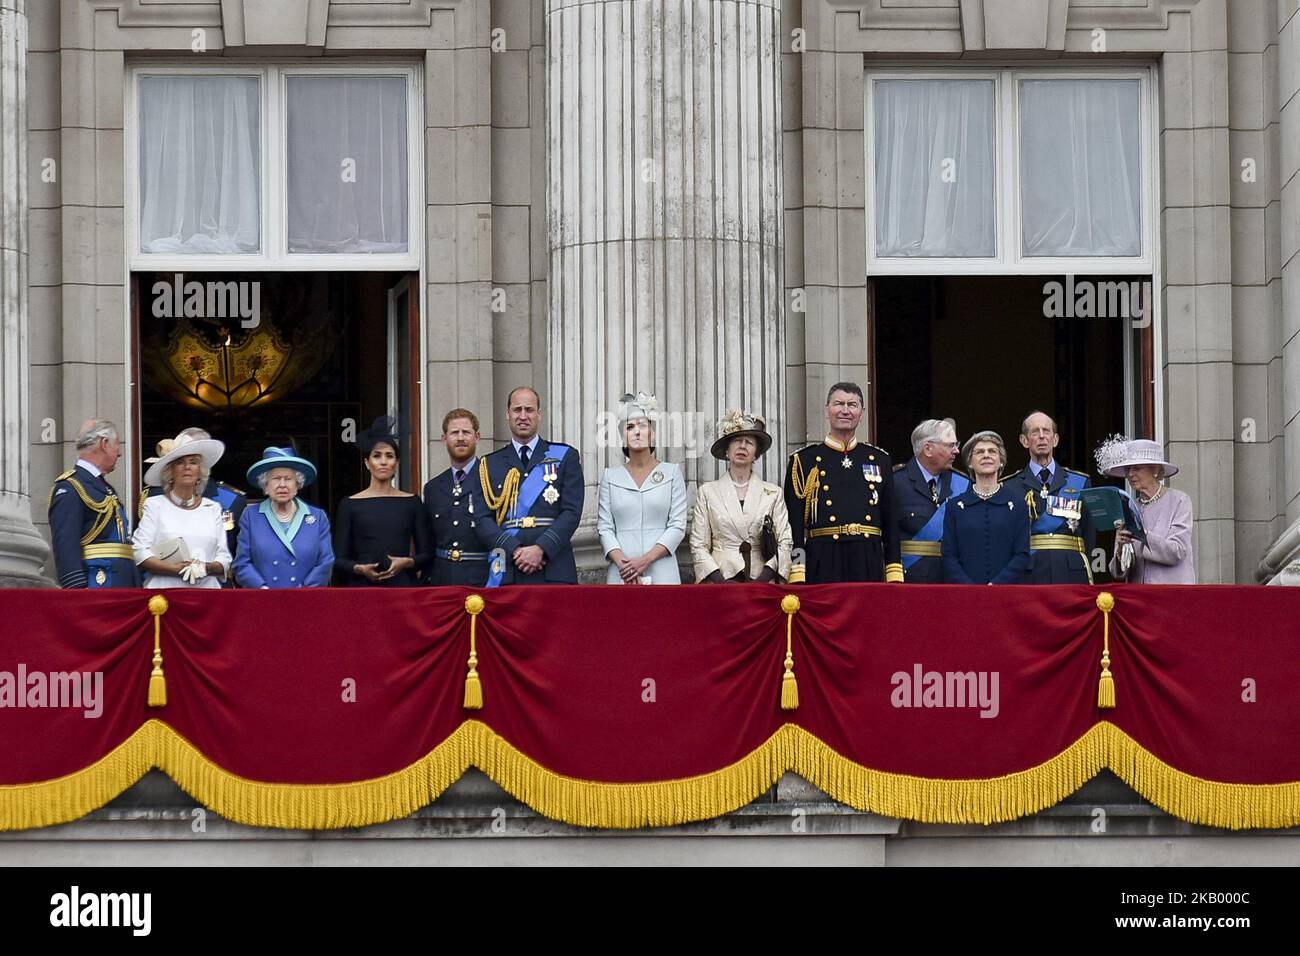 (G-D) Prince Charles, Prince de Galles, Prince Andrew, duc de York, Camilla, Duchesse de Cornwall, Reine Elizabeth II, Meghan, duchesse de Sussex, Prince Harry, Duc de Sussex, prince William, duc de Cambridge, Catherine, duchesse de Cambridge, Anne, Princesse Royale, Vice-amiral Sir Timothy Laurence, Prince Richard, duc de Gloucester, Birgitte, Duchesse de Gloucester, Le prince Edward, duc de Kent et Katharine, duchesse de Kent, regardent le flicast de la RAF sur le balcon du palais de Buckingham, tandis que des membres de la famille royale assistent à des événements marquant le centenaire de la RAF sur 10 juillet 2018 à Londres, en Angleterre Banque D'Images